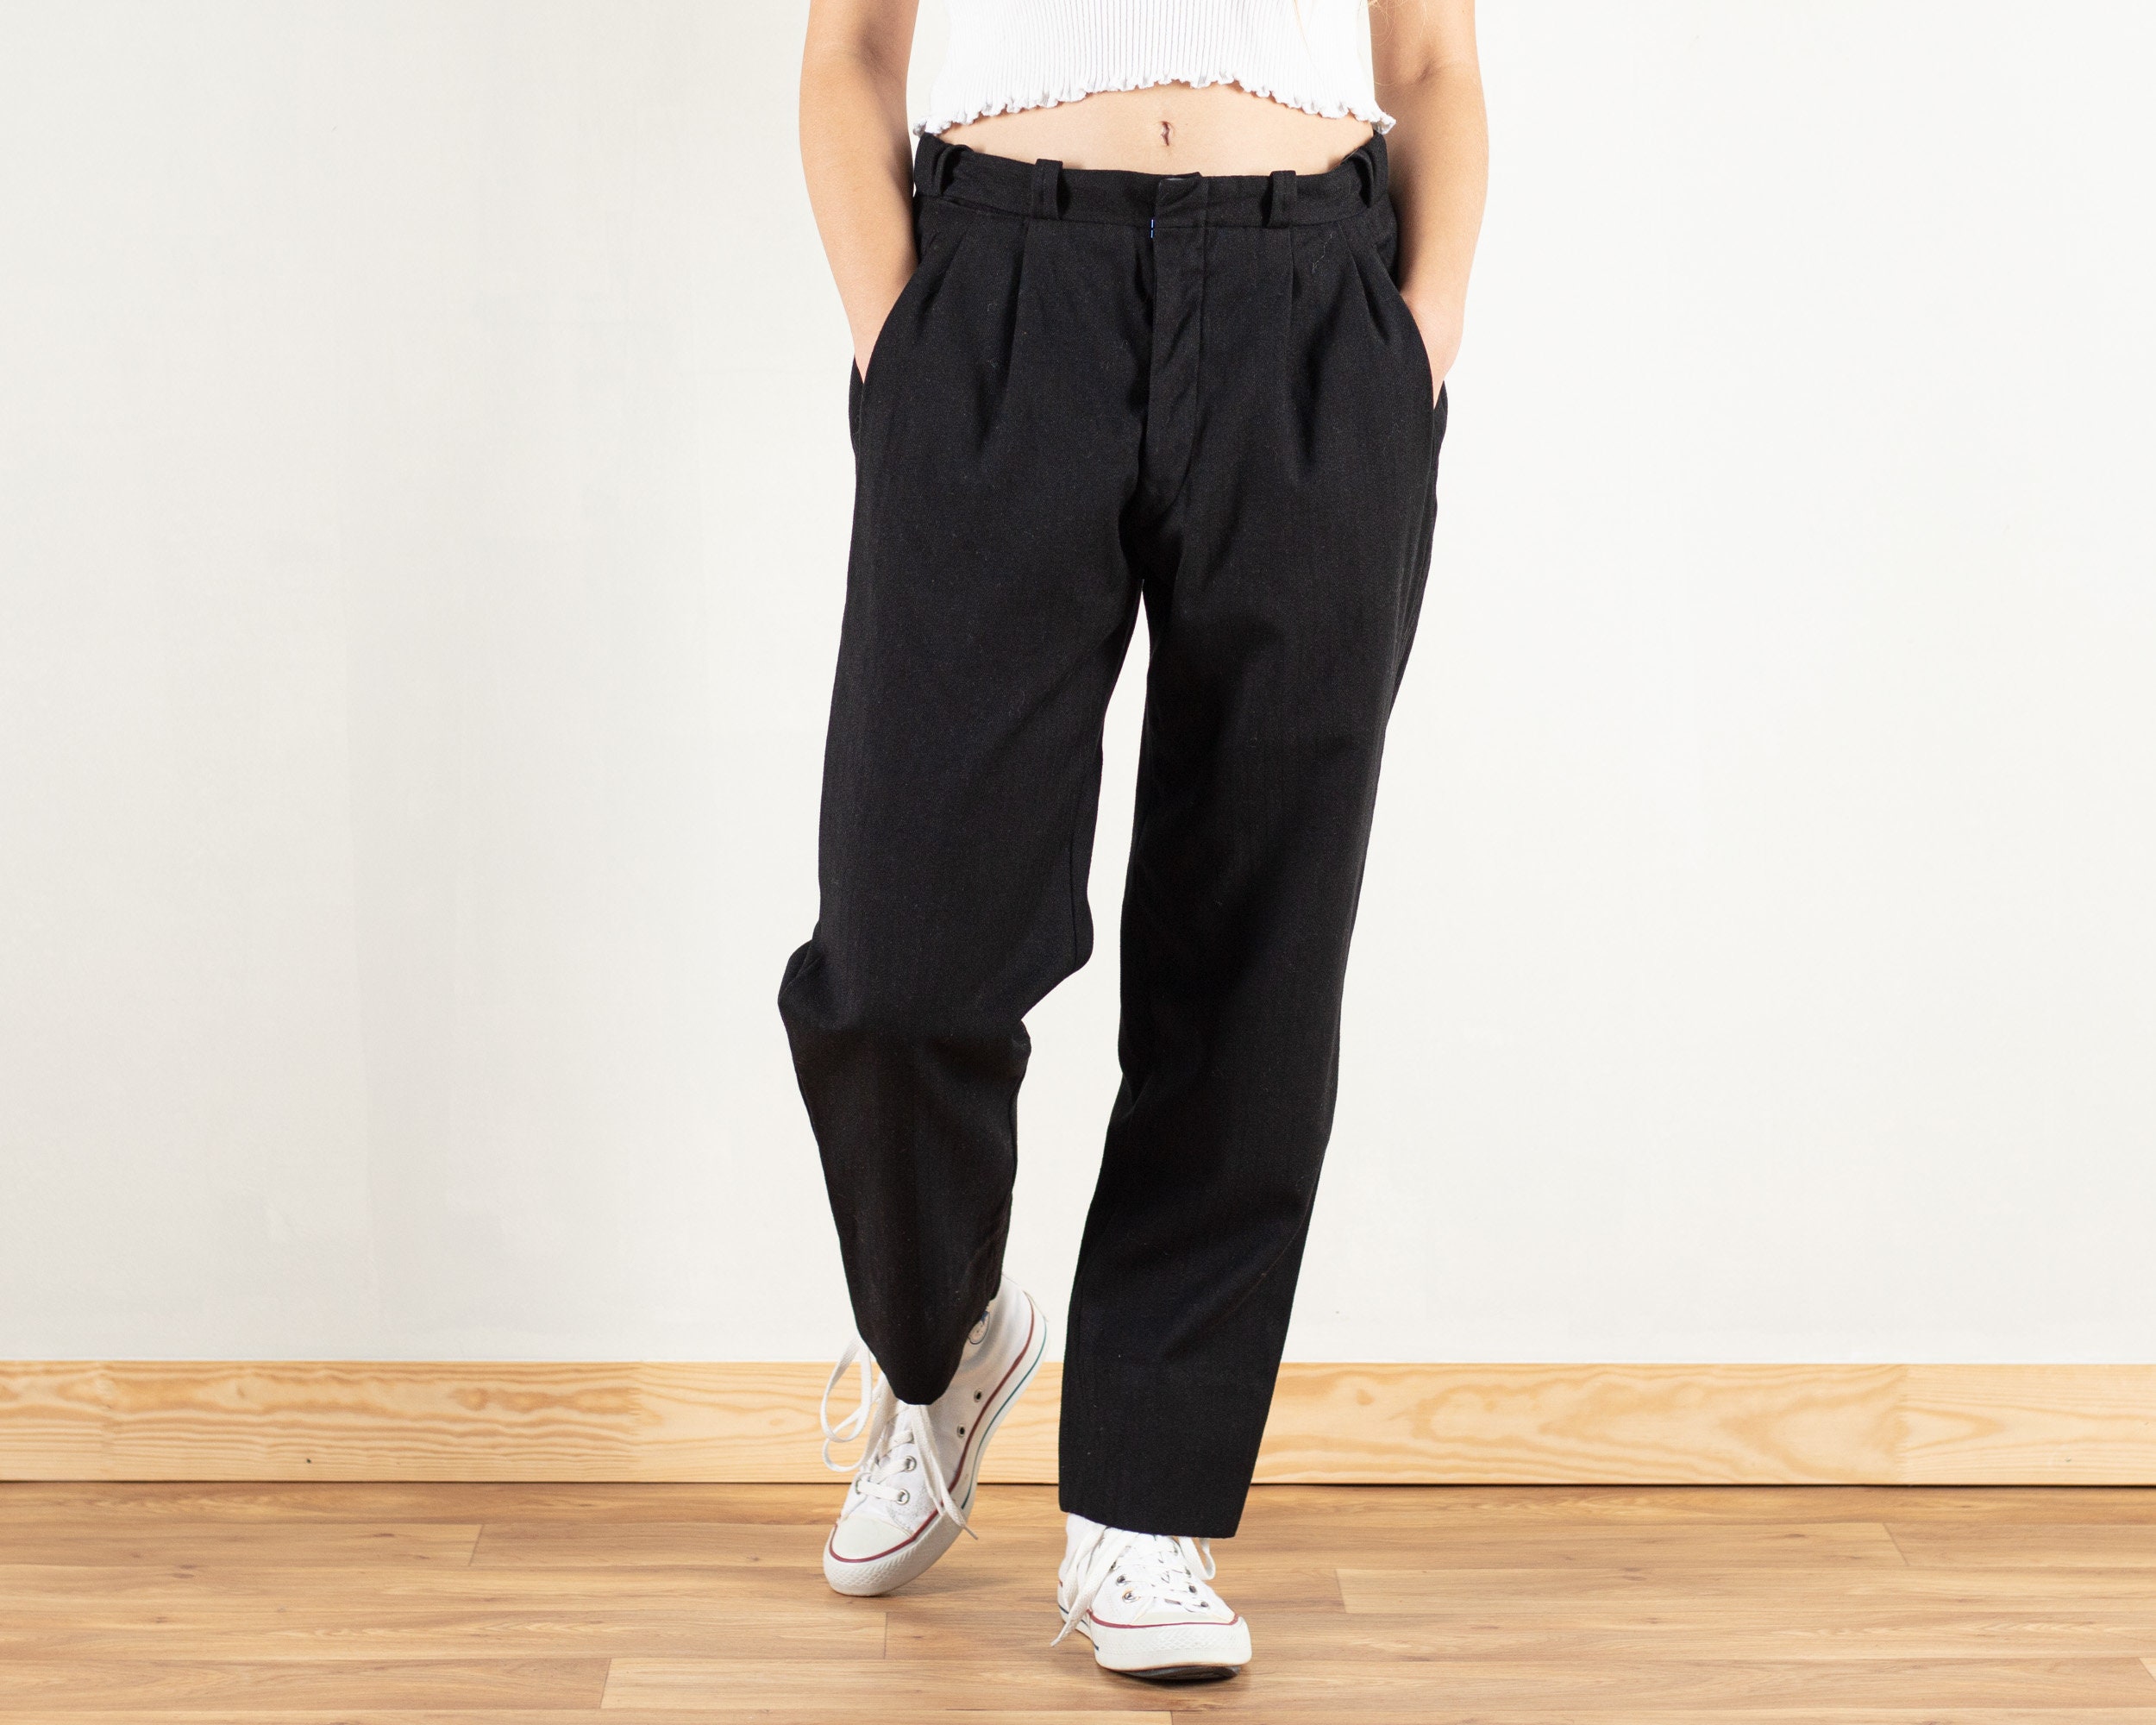 90s Minimalist Pant Suit / High-waist Pleated Pants / Minimalist